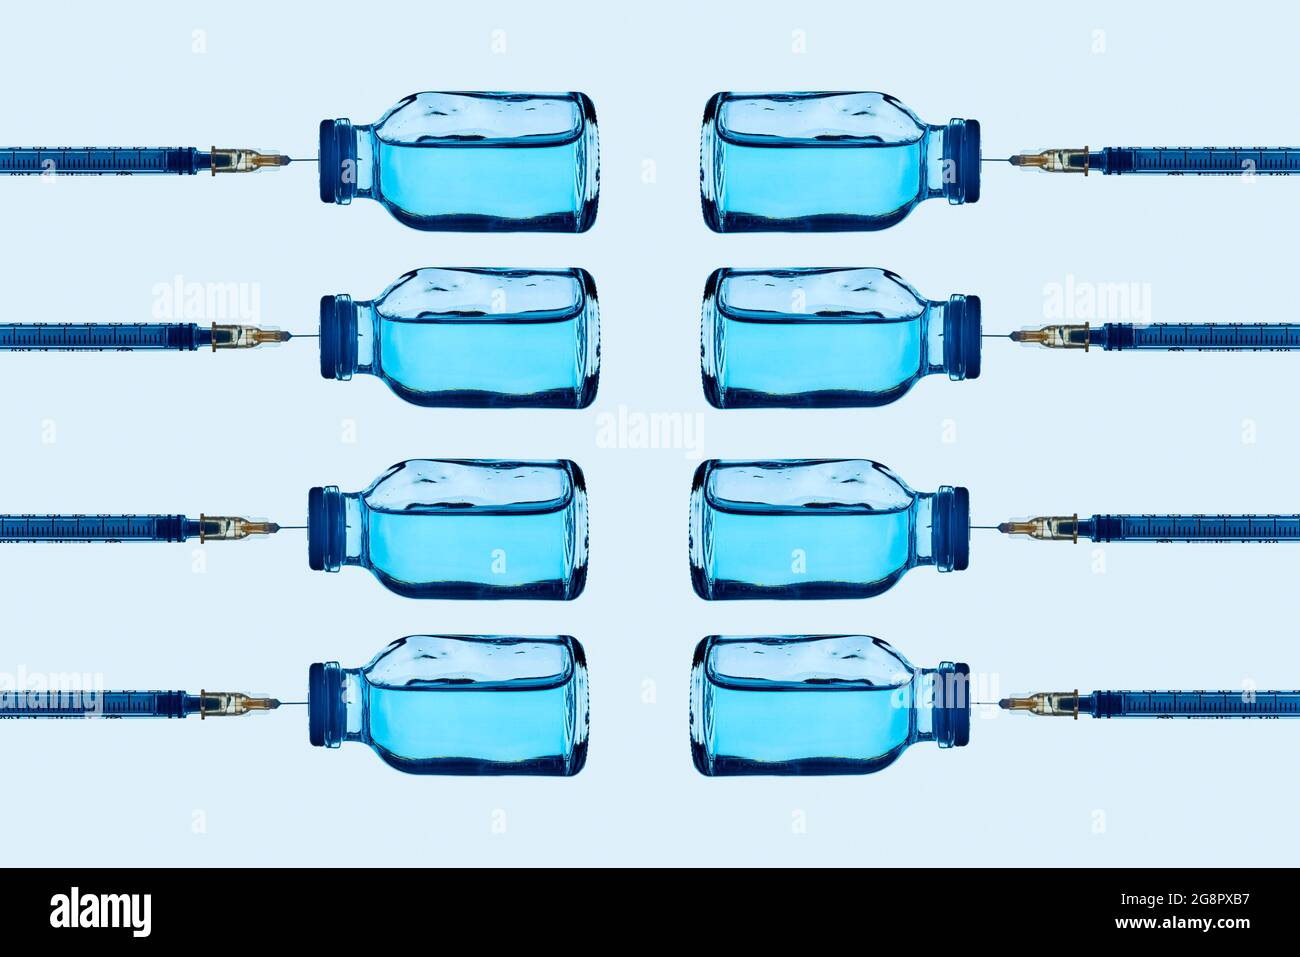 alcuni flaconcini di vaccino con un liquido blu e alcune siringhe attaccate su di essi, disposti in linee diverse su uno sfondo blu chiaro Foto Stock